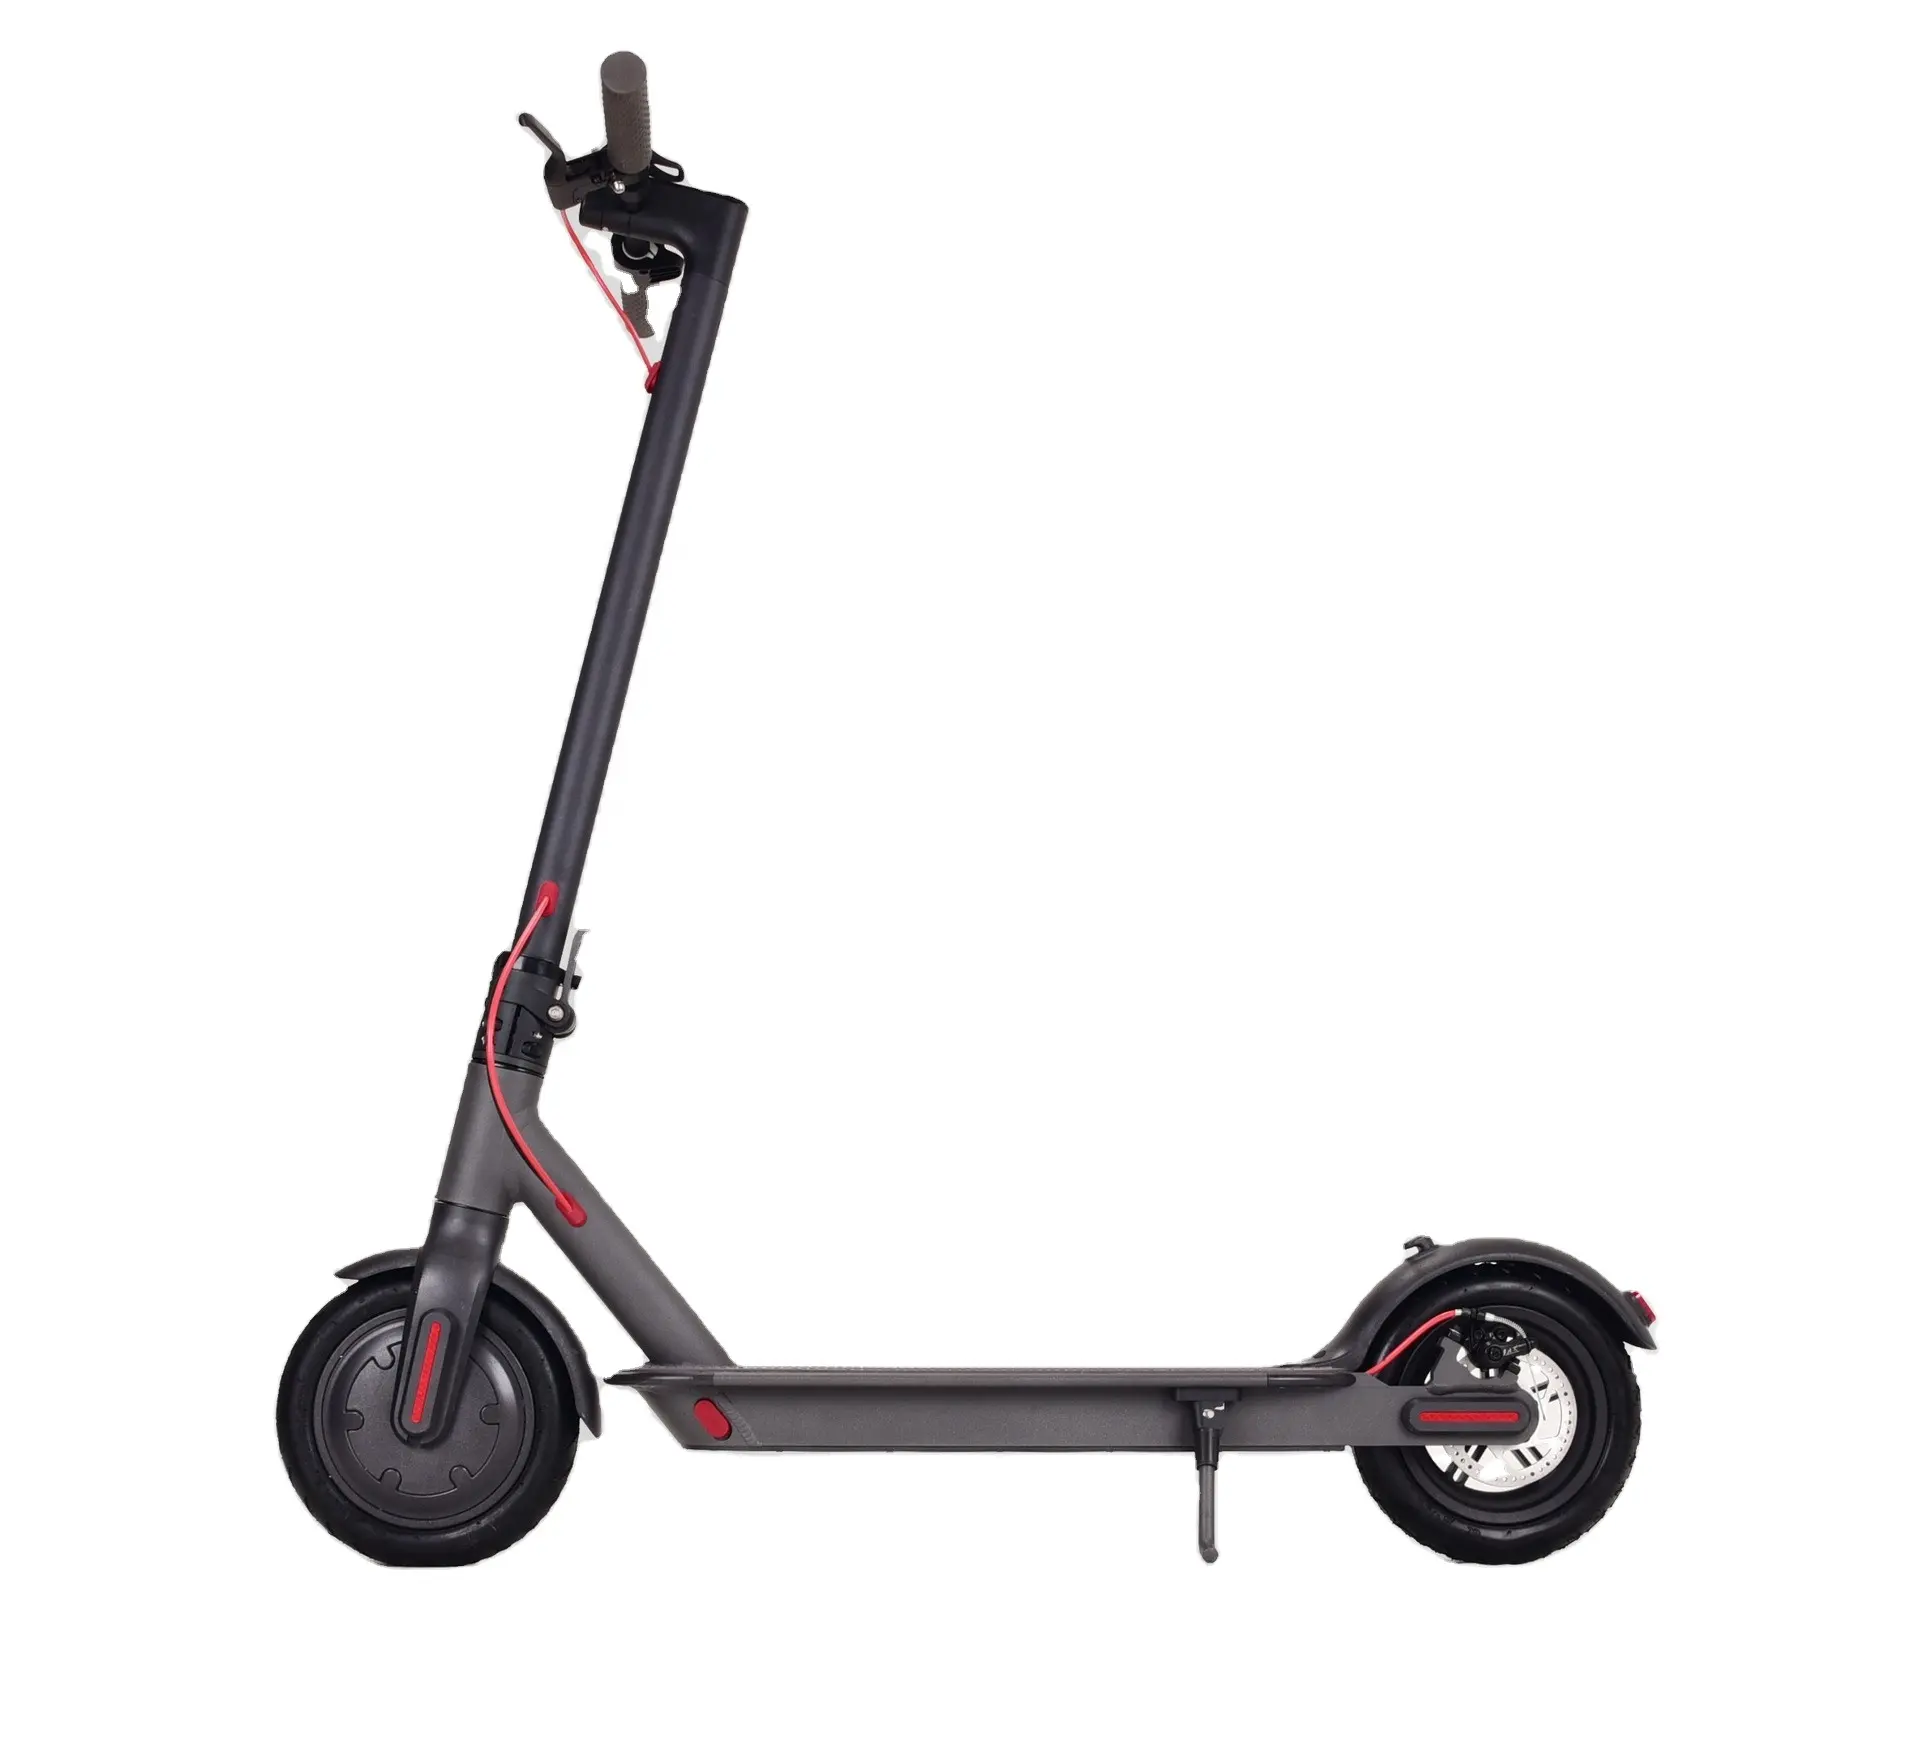 Vente chaude de l'usine de scooter électrique pour la mobilité des adultes Scooter électrique à vendre